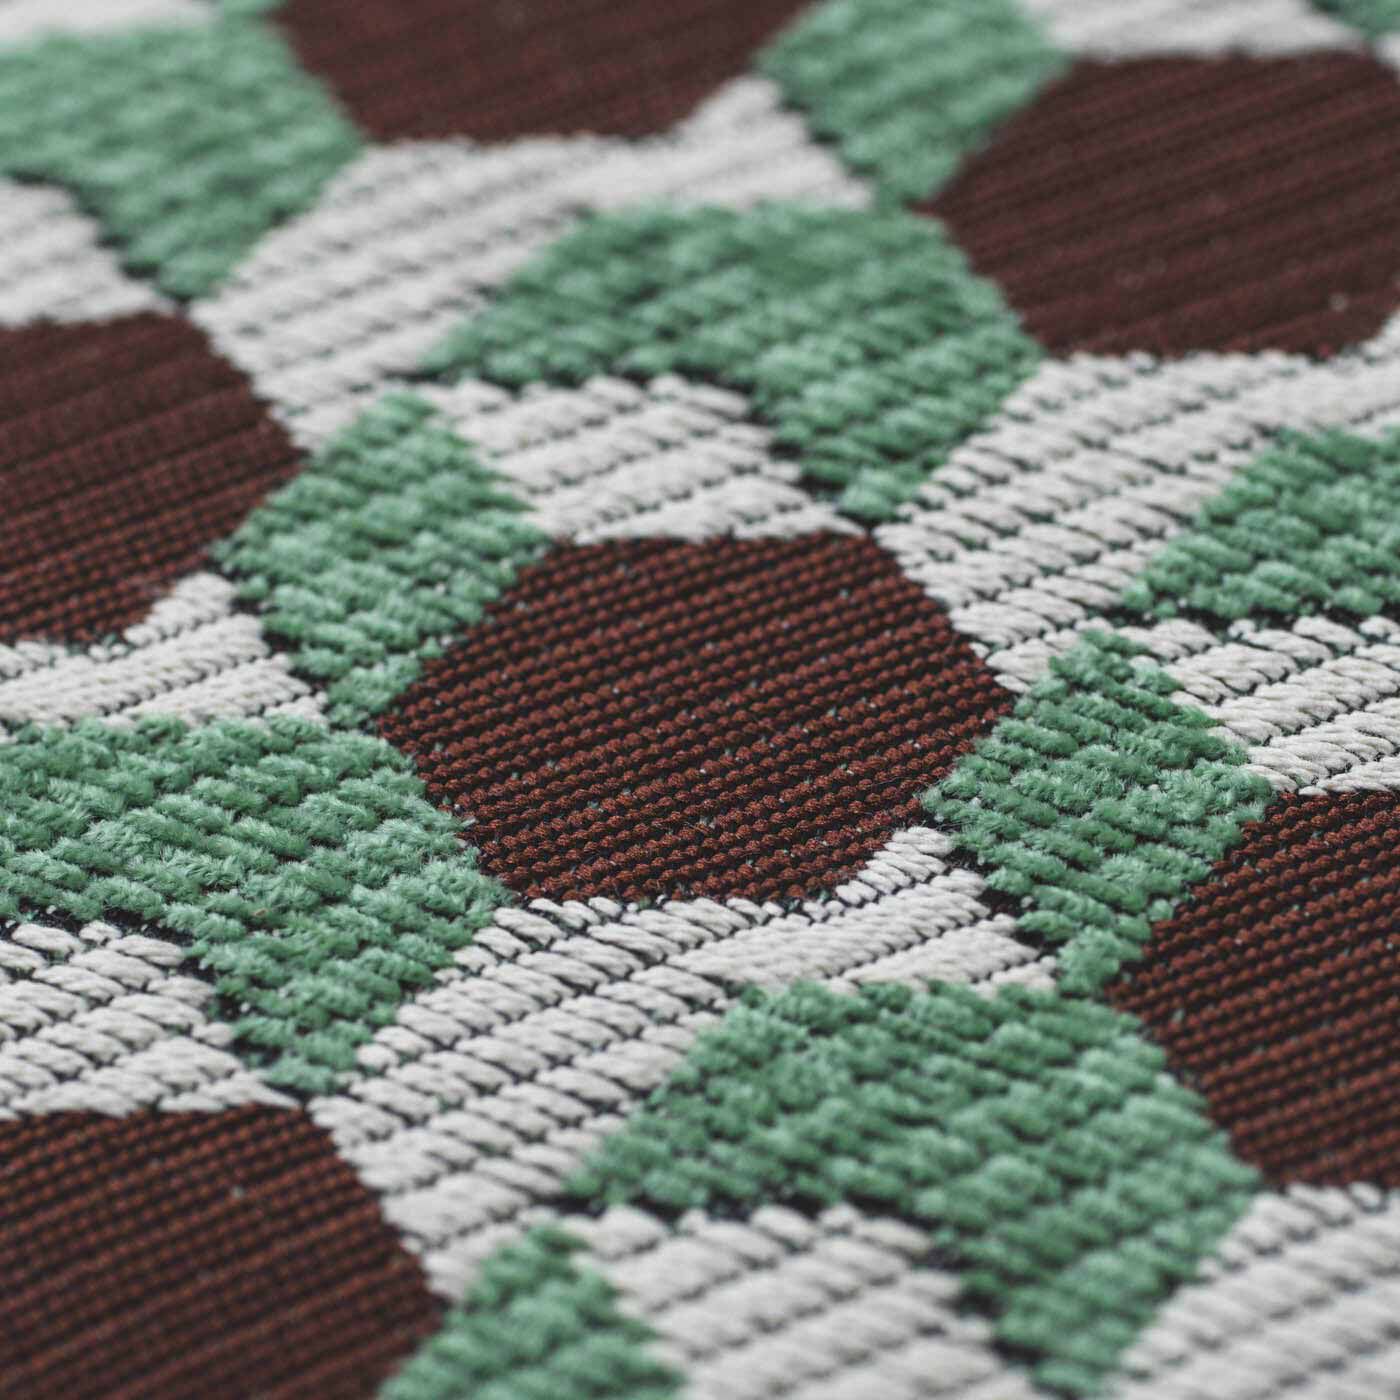 ＆Stories|テキスタイルデザイナーと家具職人が作った 播州ジャカード織のスツール〈チョコミント色〉|このスツールのために、世界的に活躍されるテキスタイルデザイナー・梶原加奈子さんへ新たにデザインを依頼し、椅子の張り地用の素材で織り上げました。